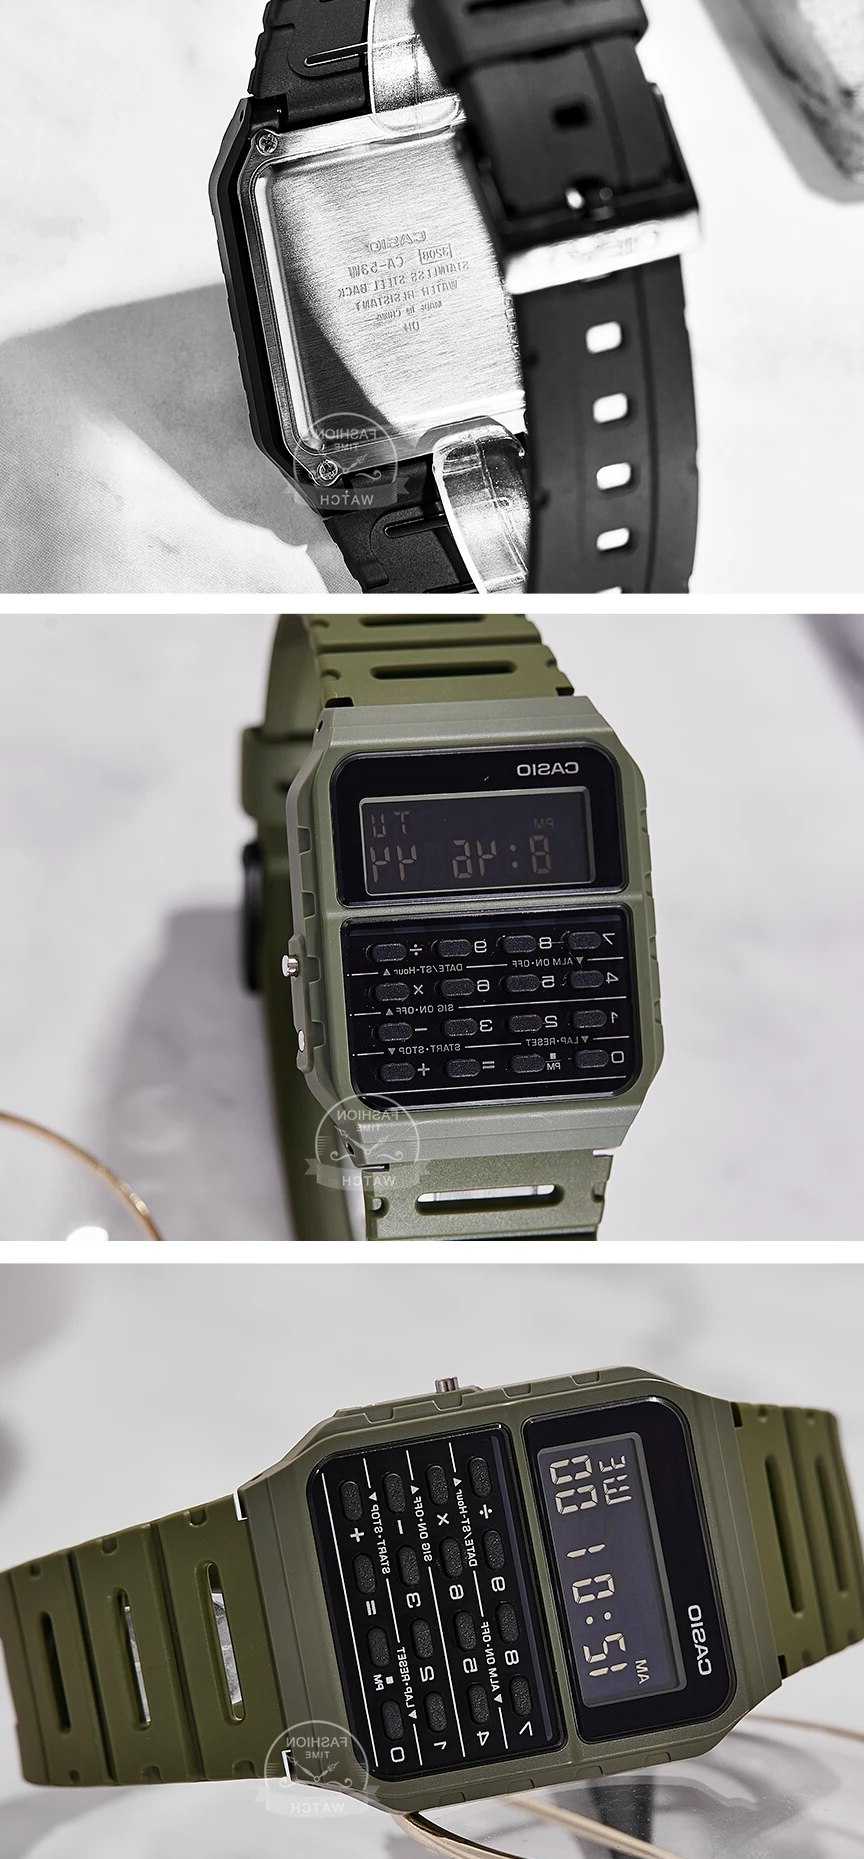 Opinie Zegarek Casio dla mężczyzn - top luksusowy zestaw komputer w… sklep online